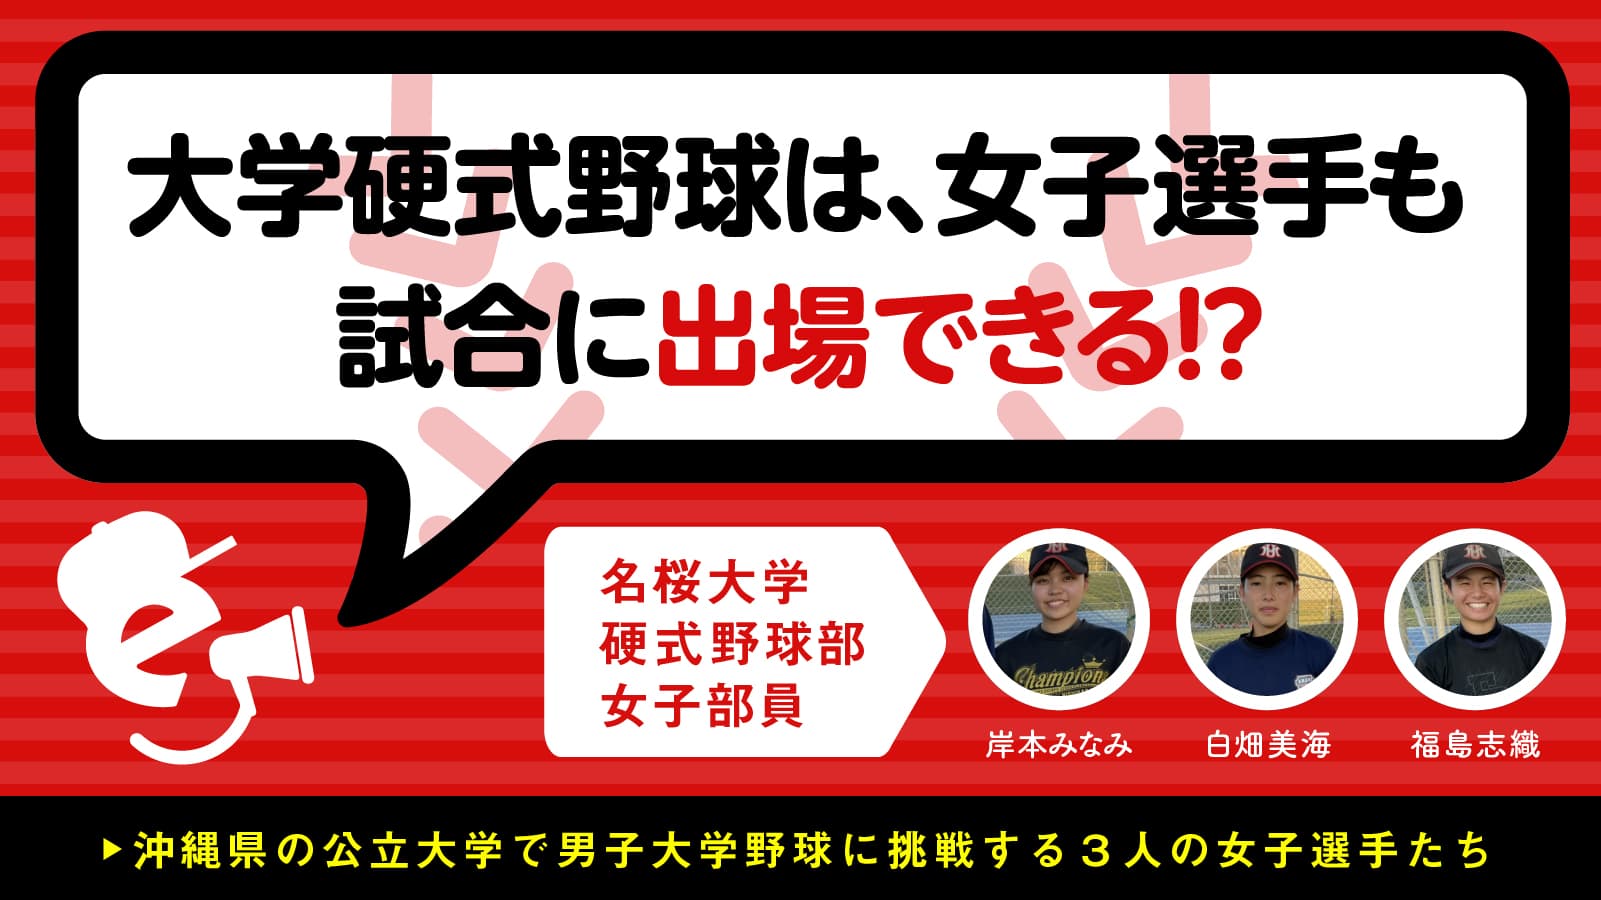 「大学硬式野球は、女子選手も試合に出場できる!?」沖縄県の公立大学で男子大学野球に挑戦する3人の女子選手たち